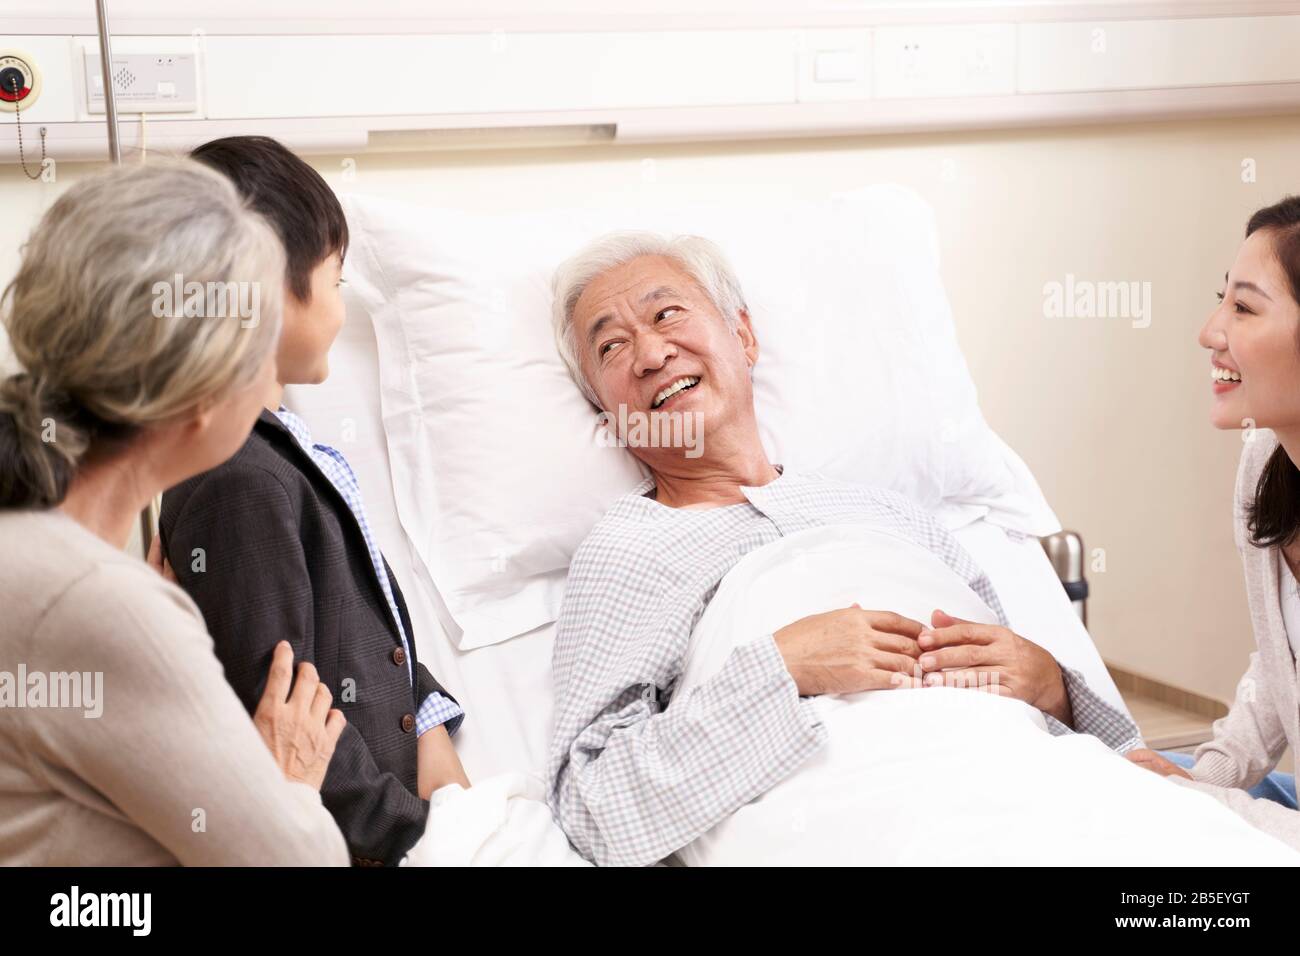 Asiatische Familie mit Kind, die Großeltern im Krankenhaus besucht Stockfoto